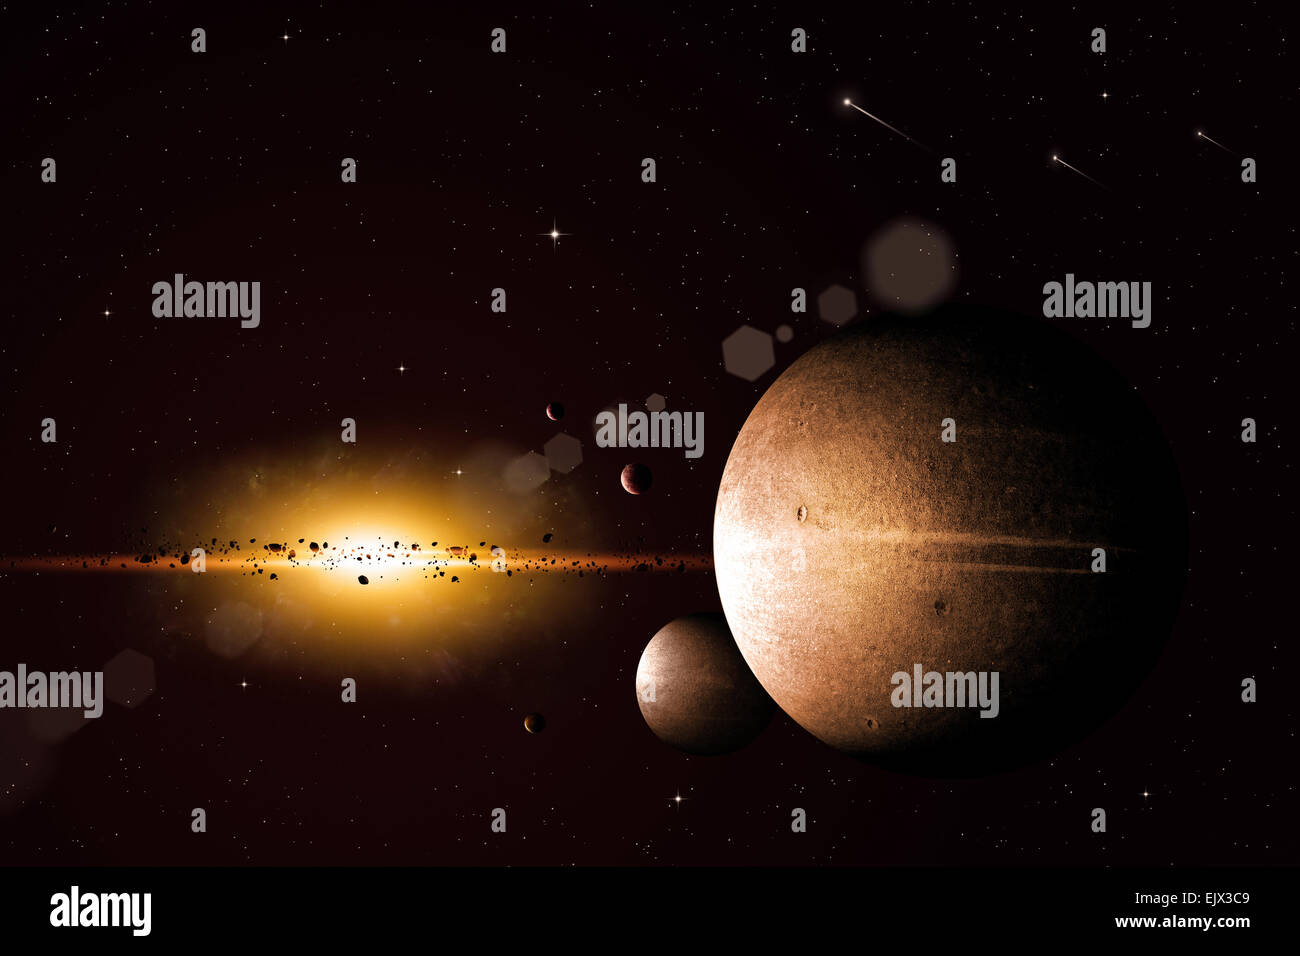 Abbildung abstrakt imaginären Weltraum mit Planeten und Monde Stockfoto